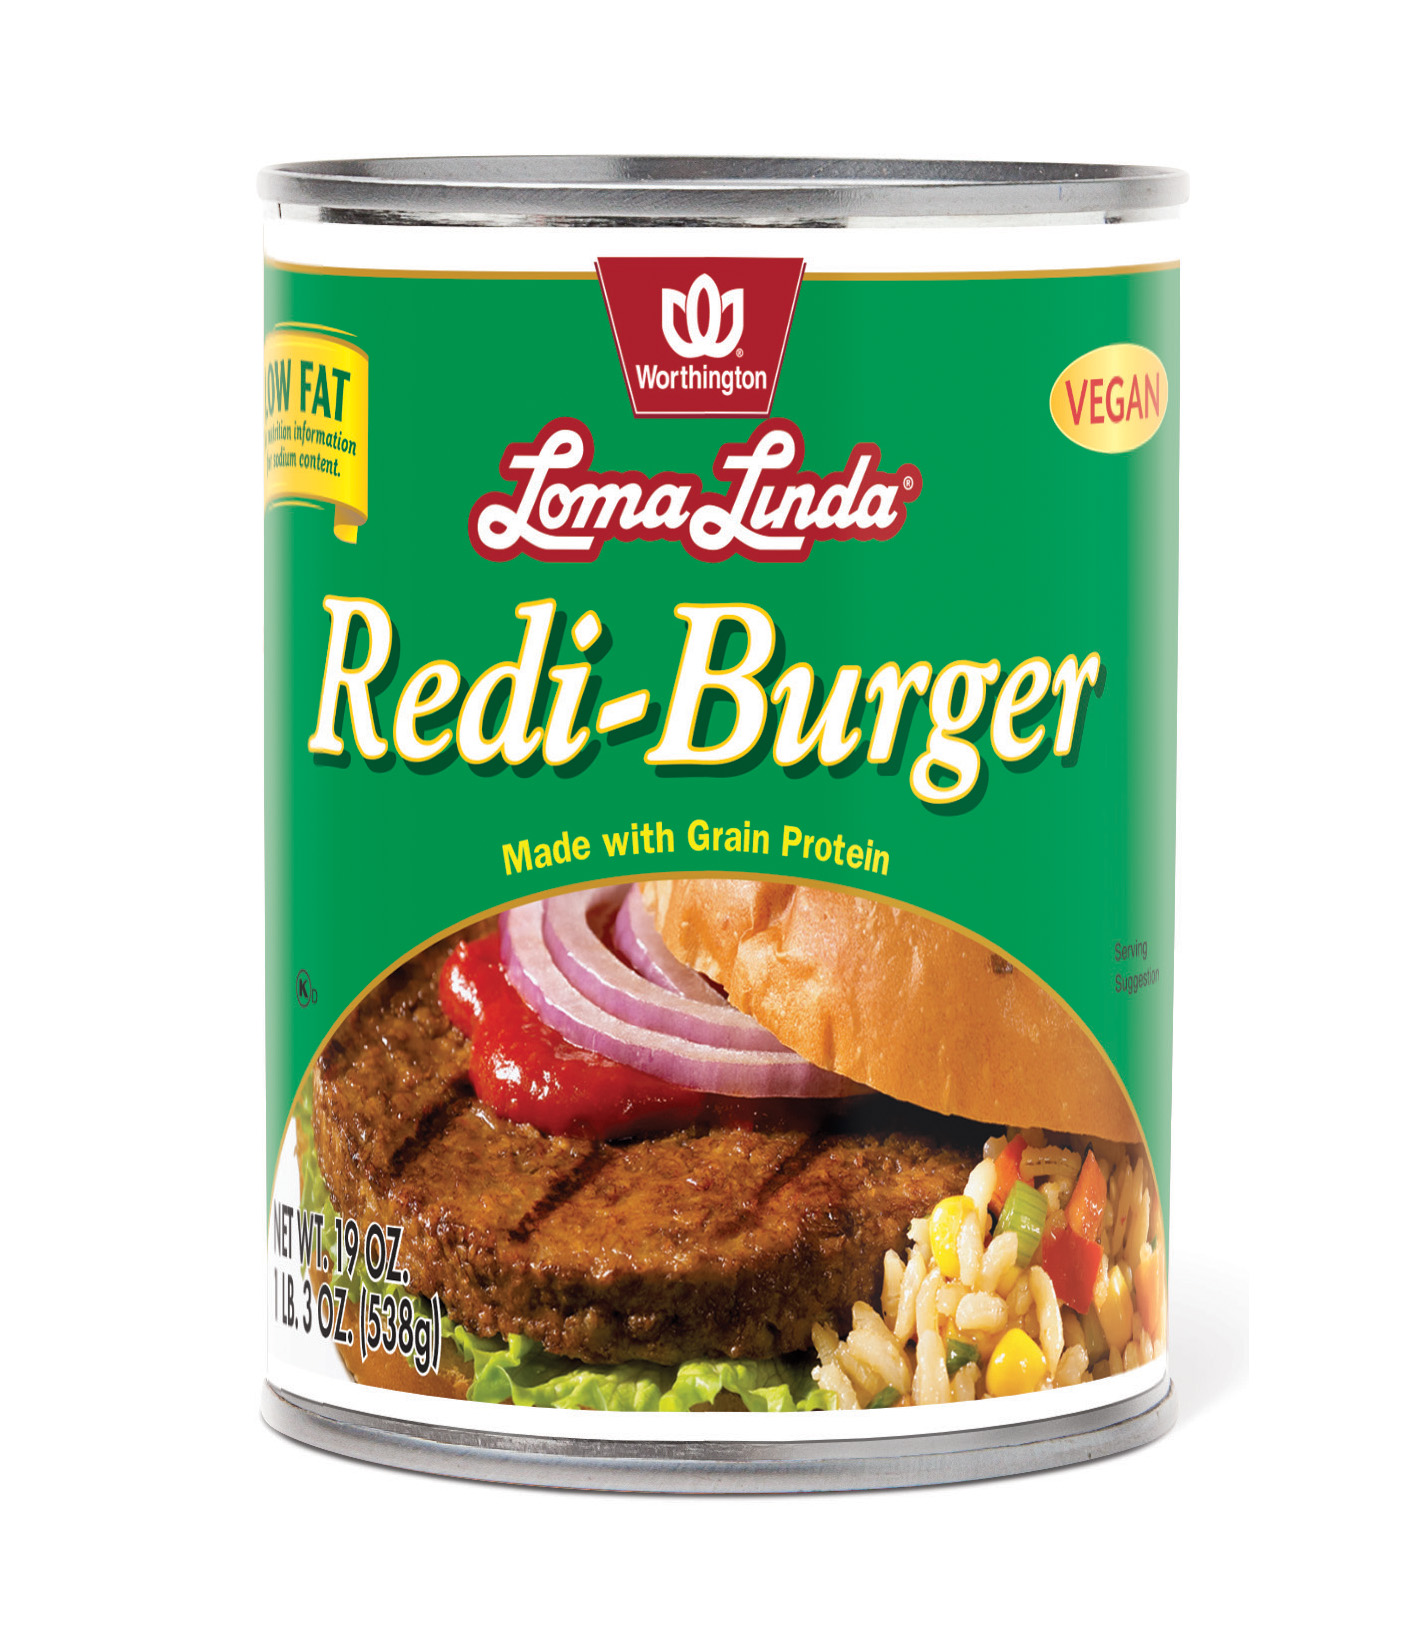 Redi-Burger